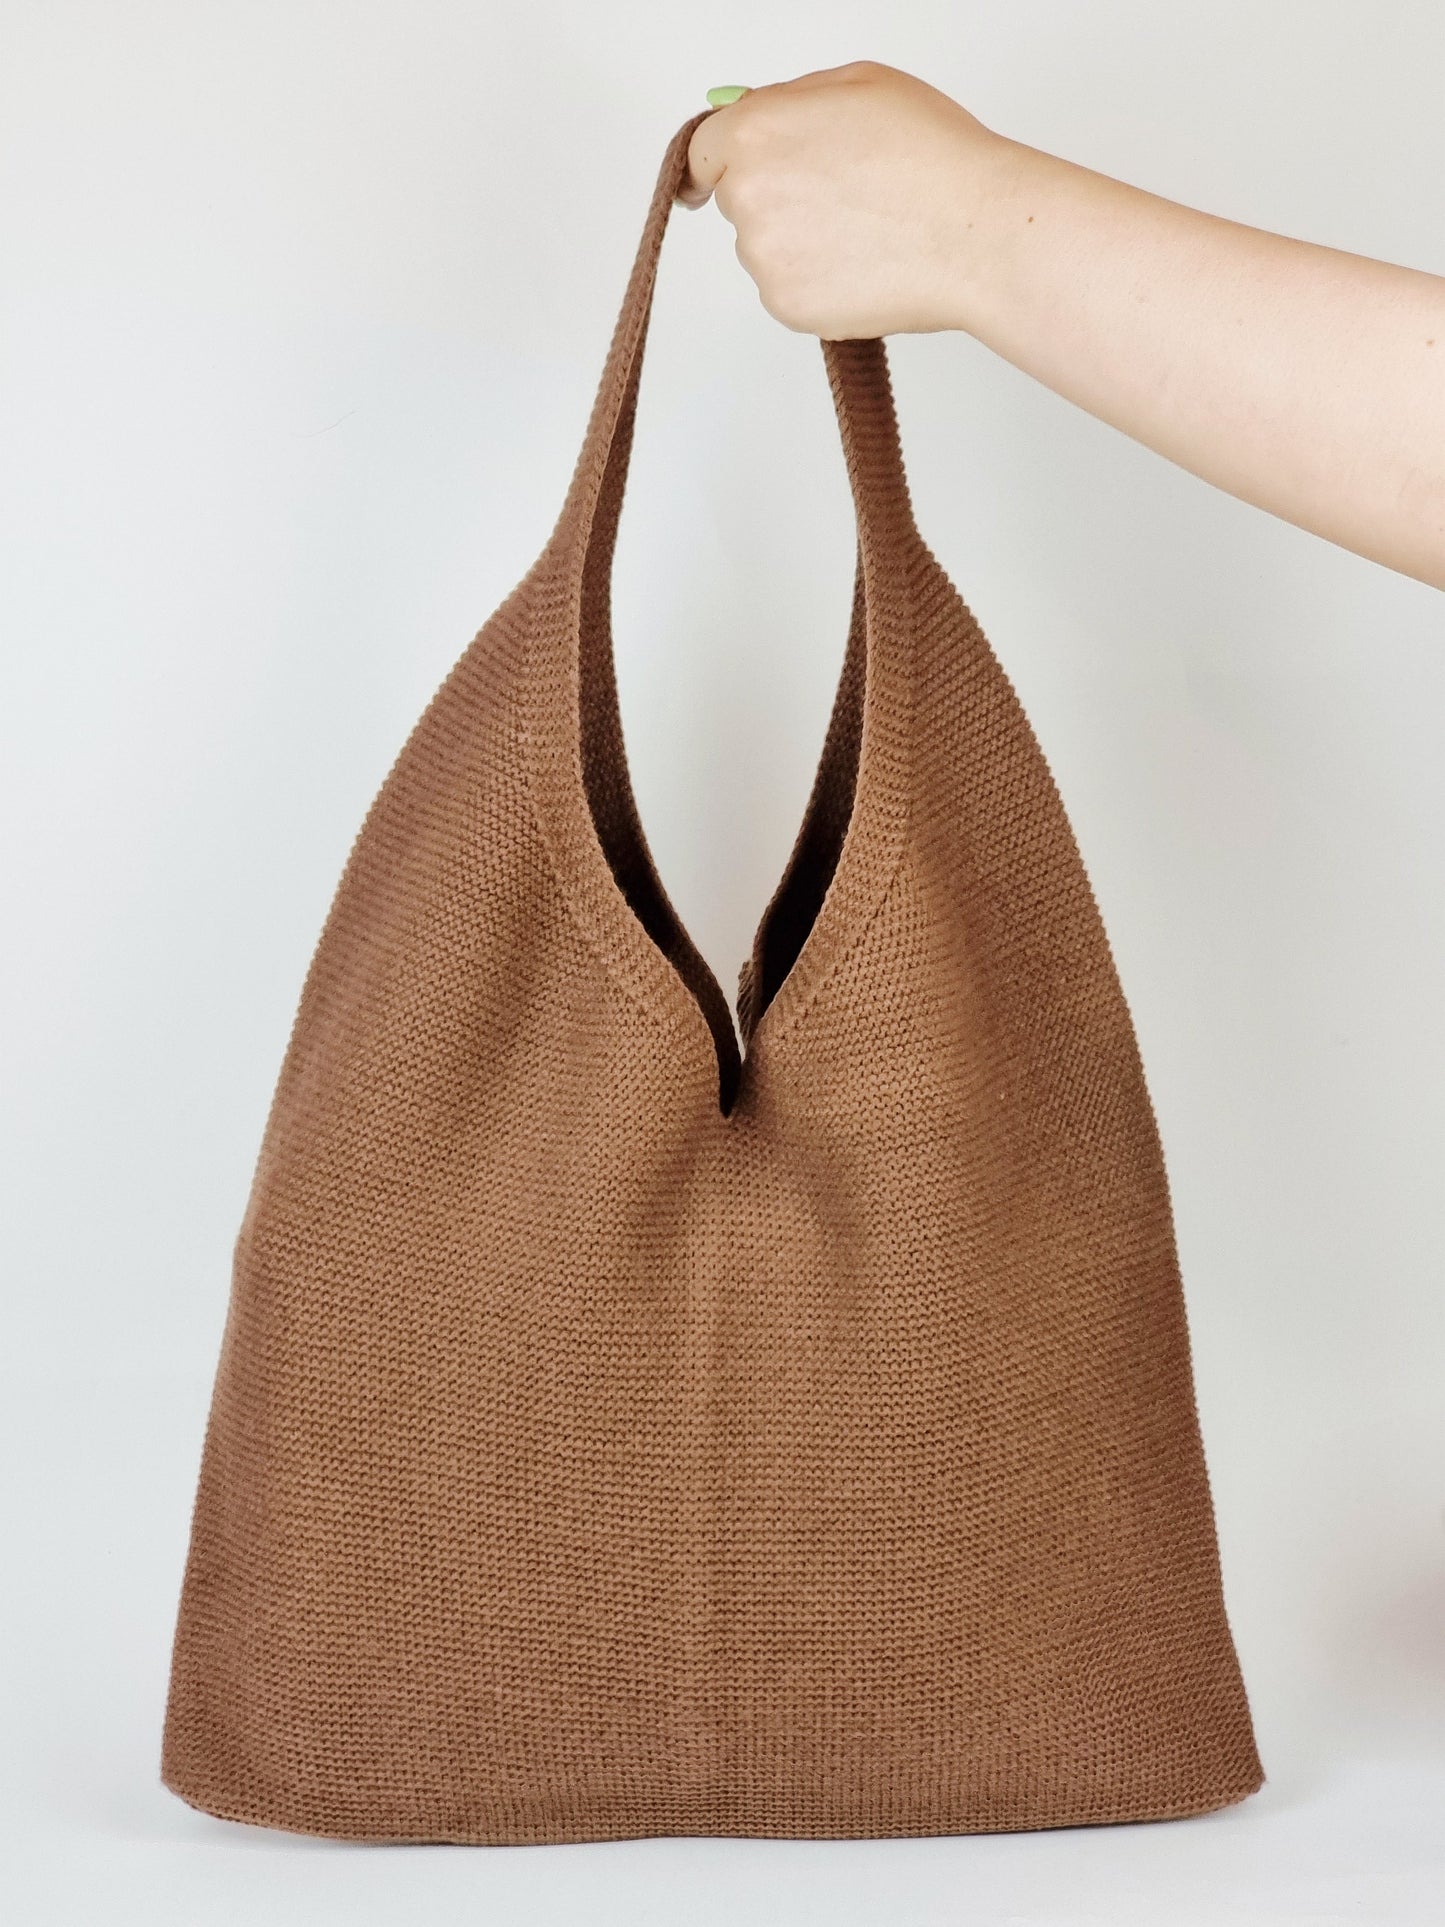 XL Knit Bag